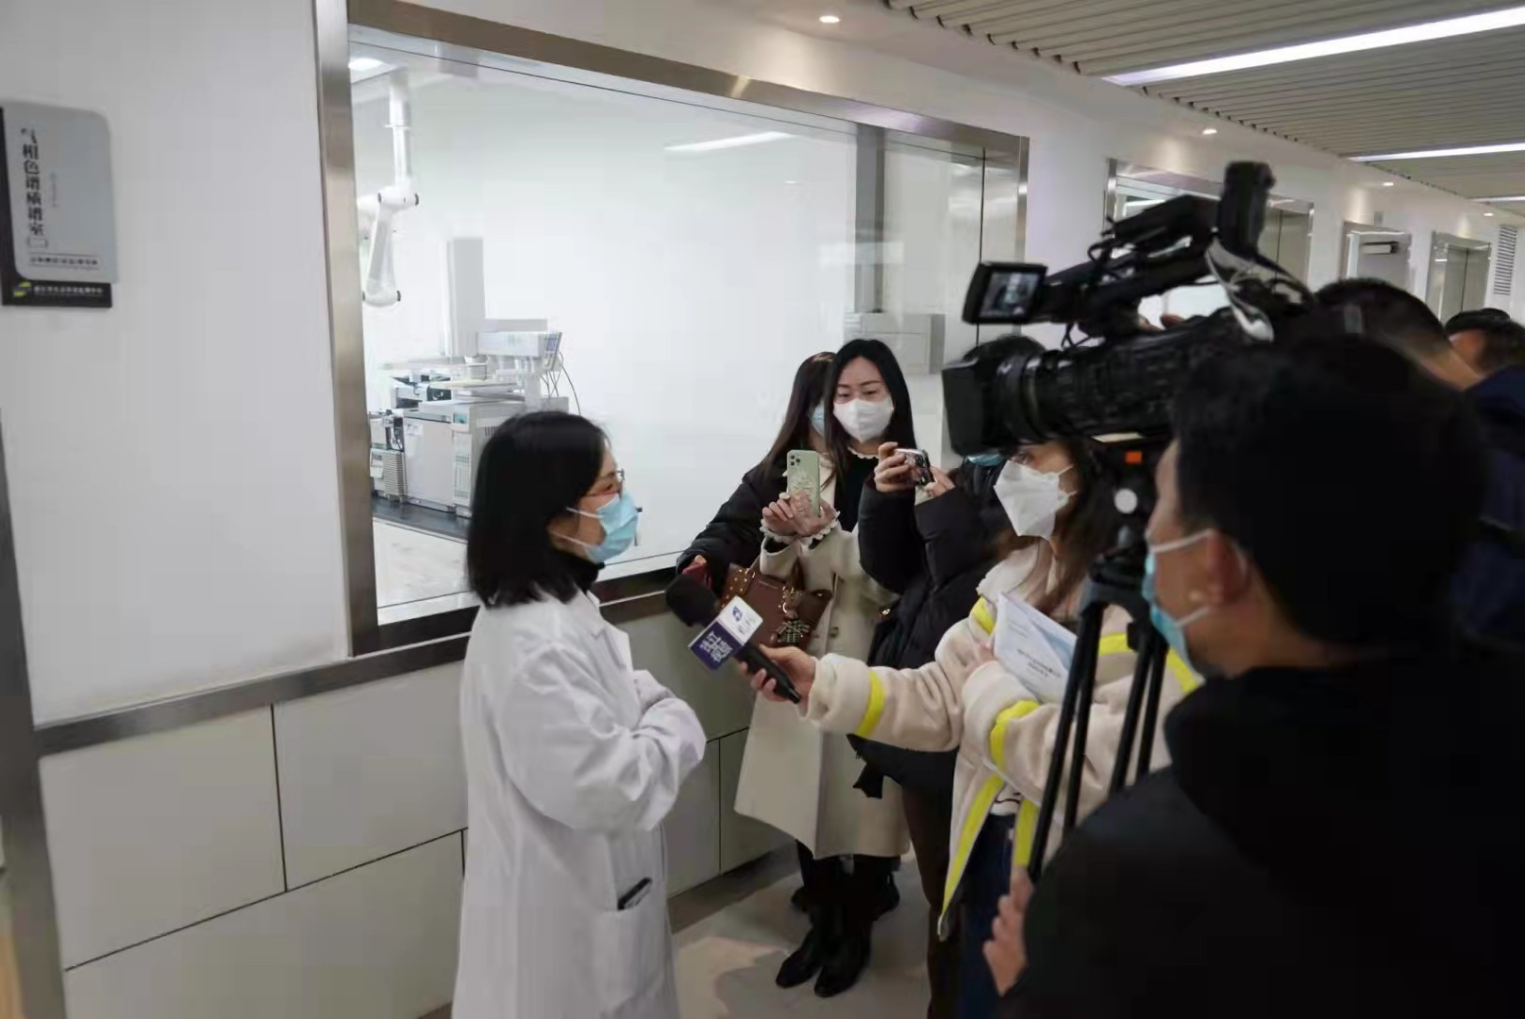 浙江省生态环境监测中心专家向媒体介绍监测设备情况 沈焕壮 摄